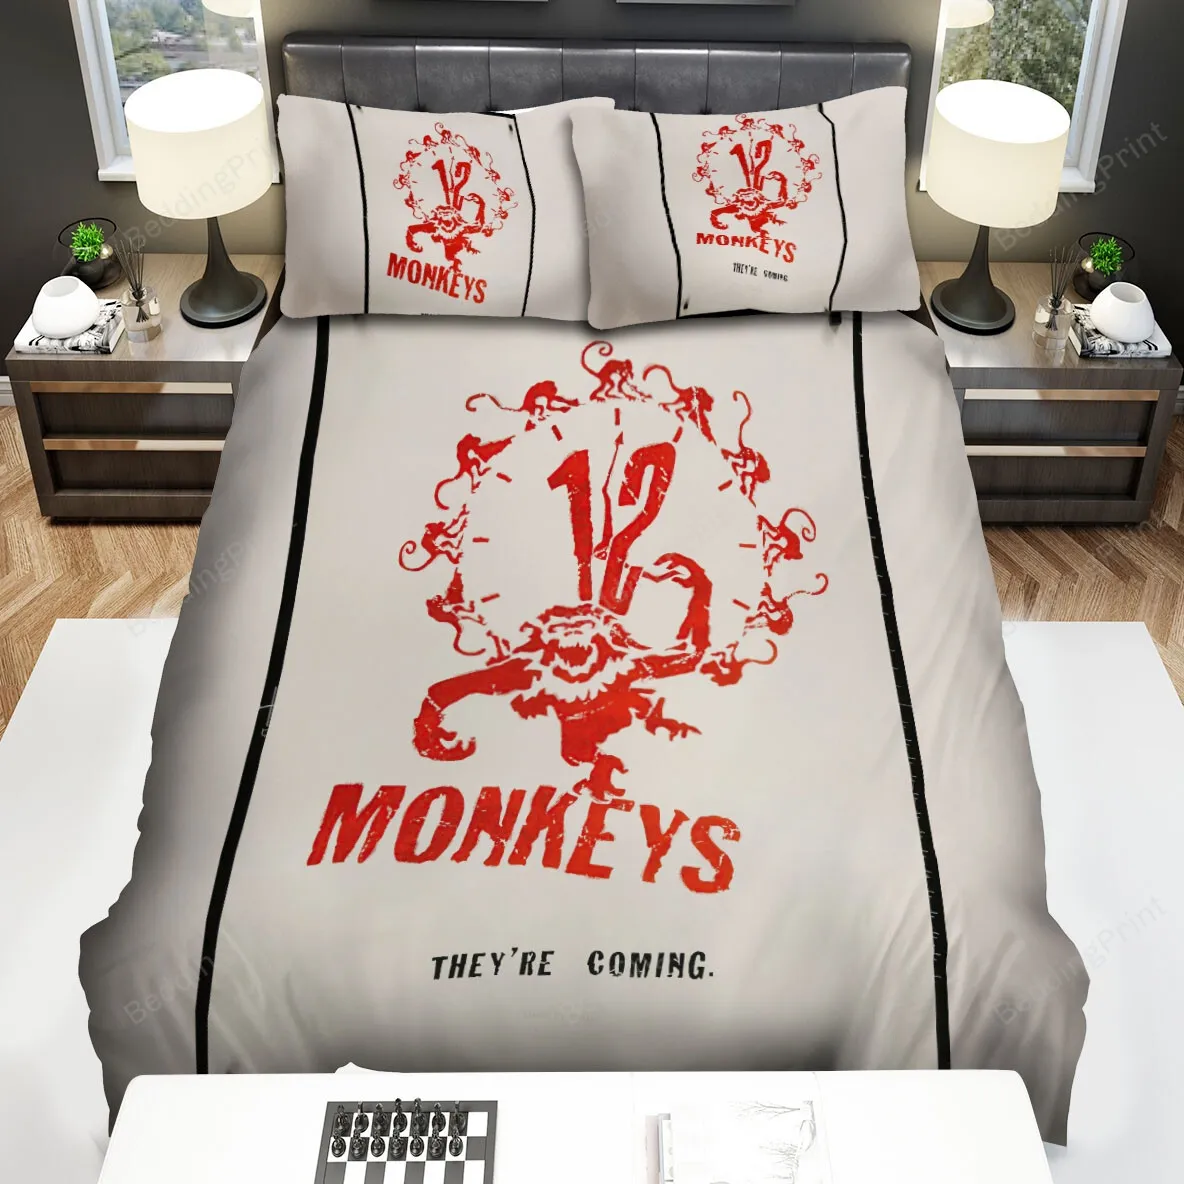 12 Monkeys (20152018) Poster Movie Poster Bed Sheets Spread Comforter Duvet Cover Bedding Sets Ver 7